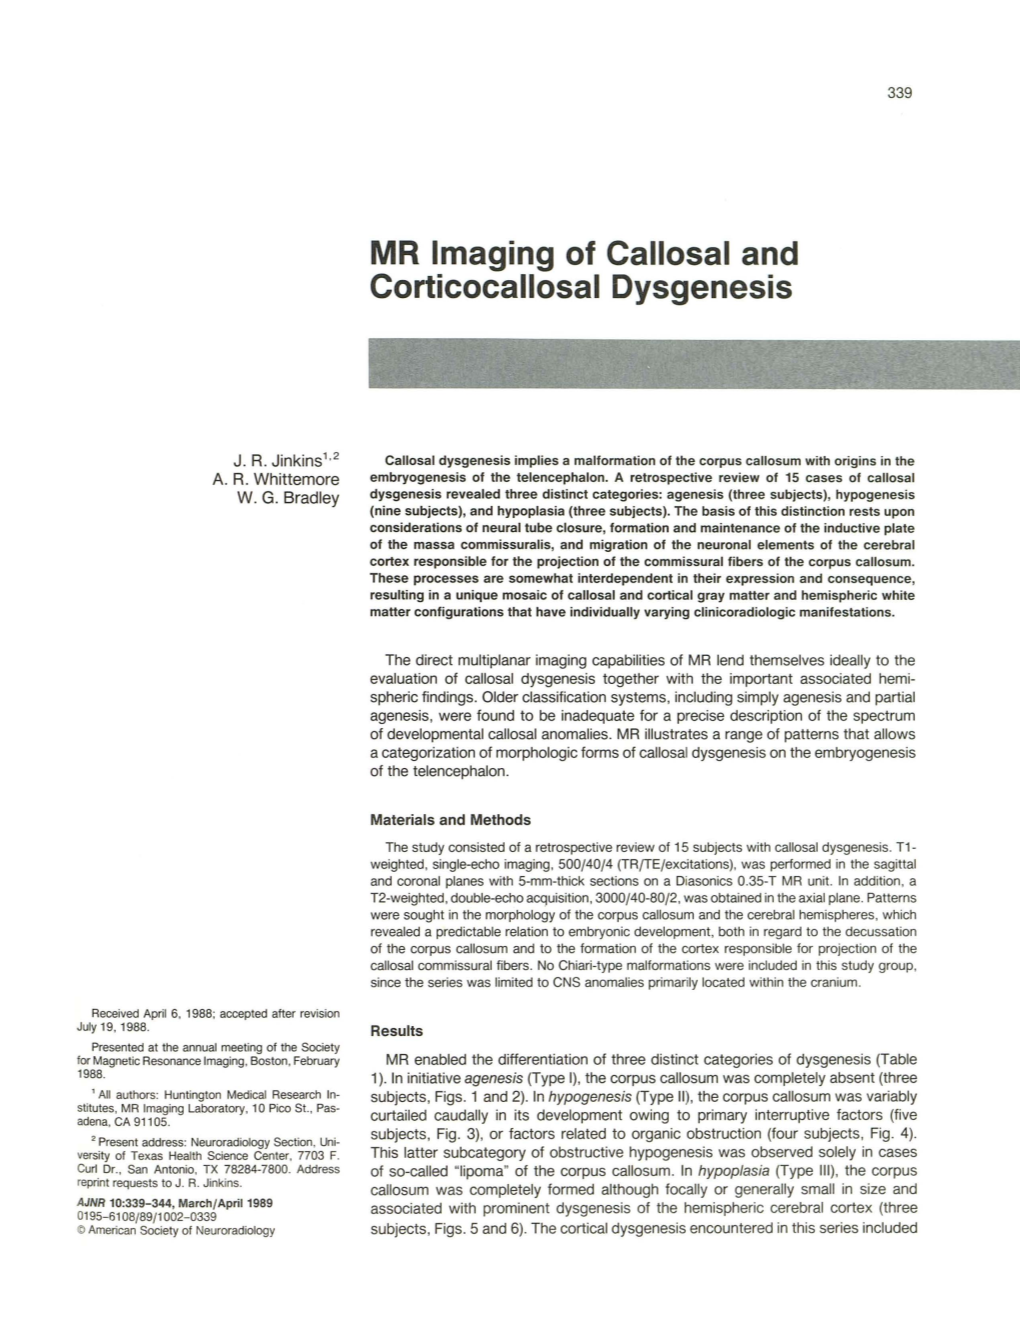 MR Imaging of Callosal and Corticocallosal Dysgenesis